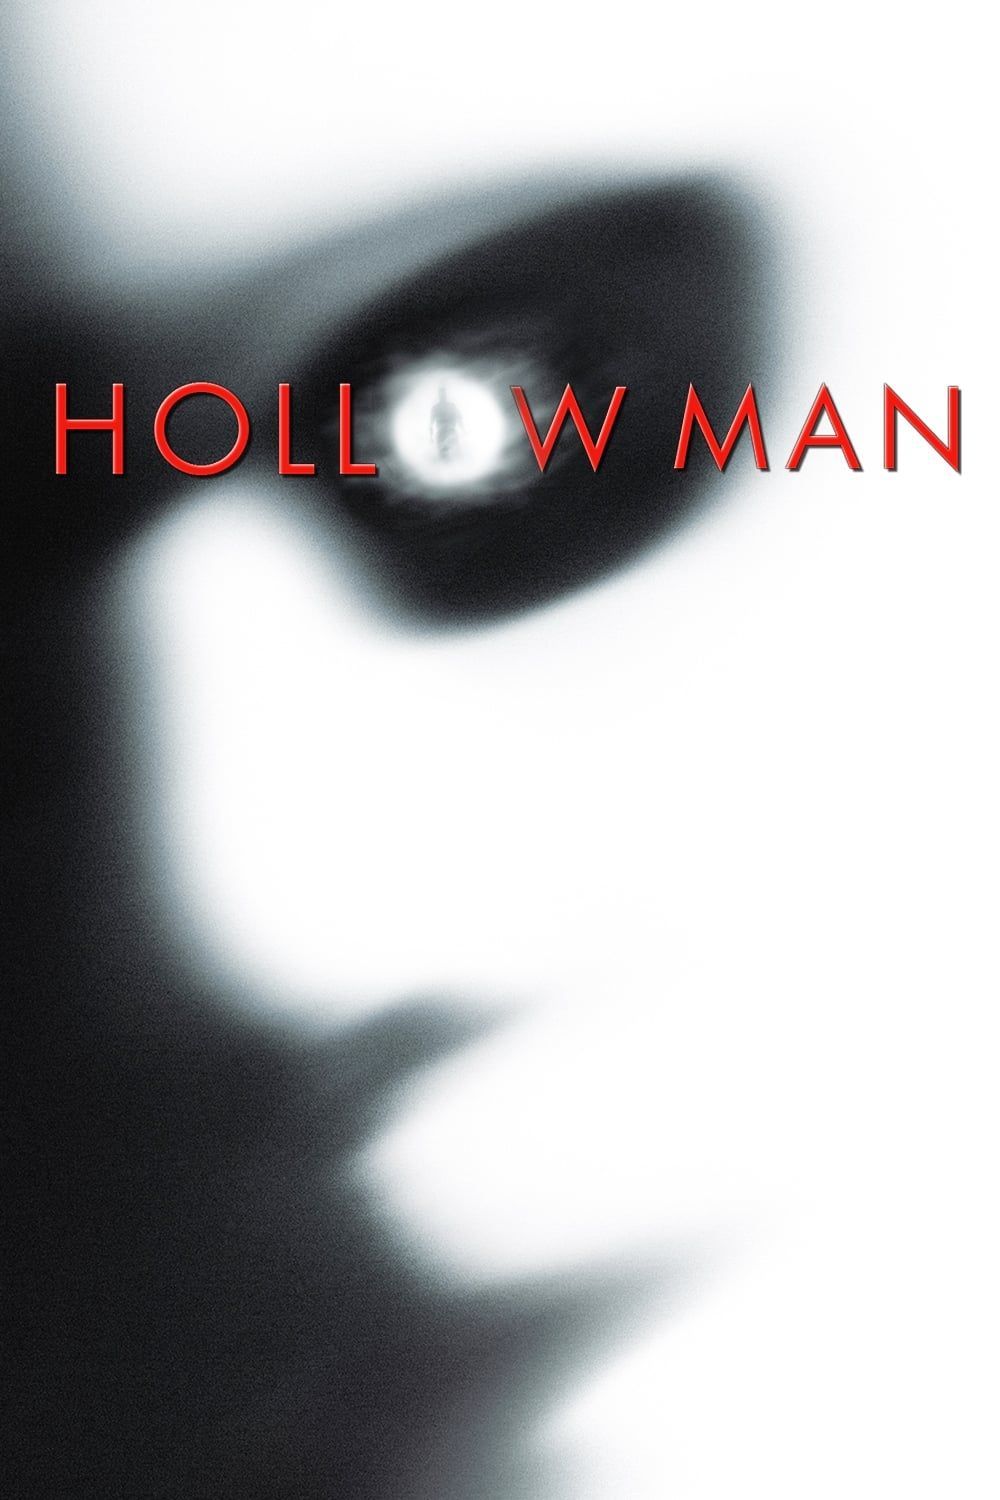 diana mullen add hollow man movie online photo